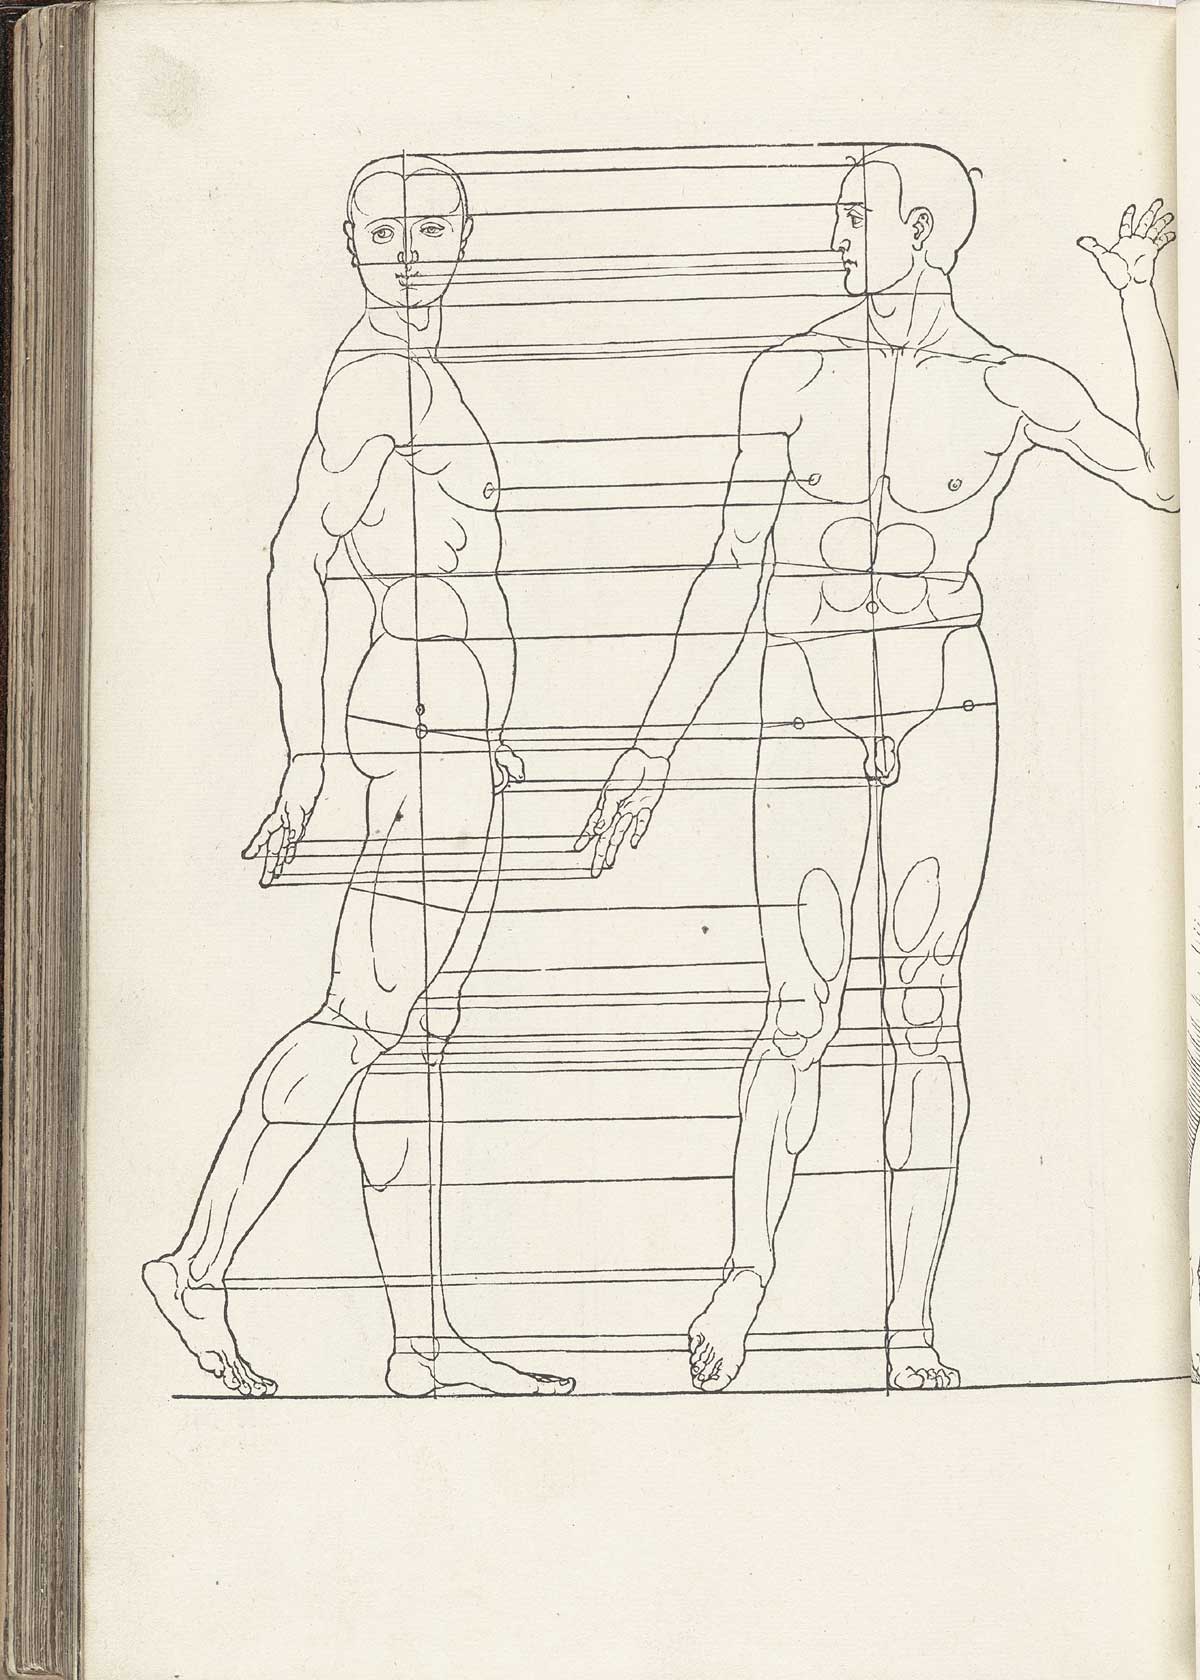 Tall thin male figures walking, from Albrecht Dürer’s Vier Bücher von menschlicher Proportion, NLM Call no. WZ 240 D853v 1528.